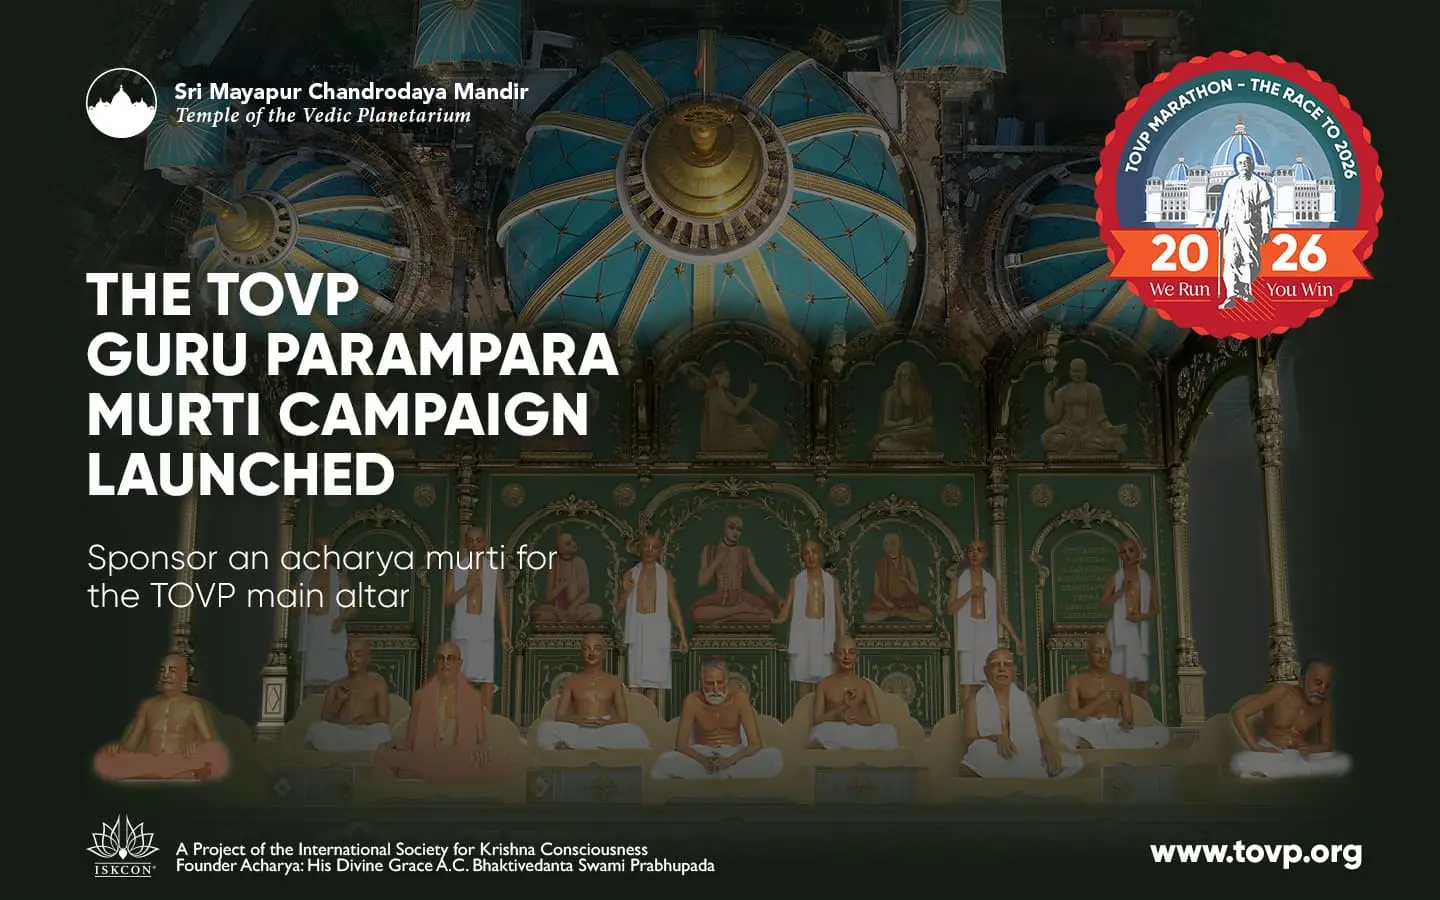 Lanzamiento de la campaña TOVP Guru Parampara Murti